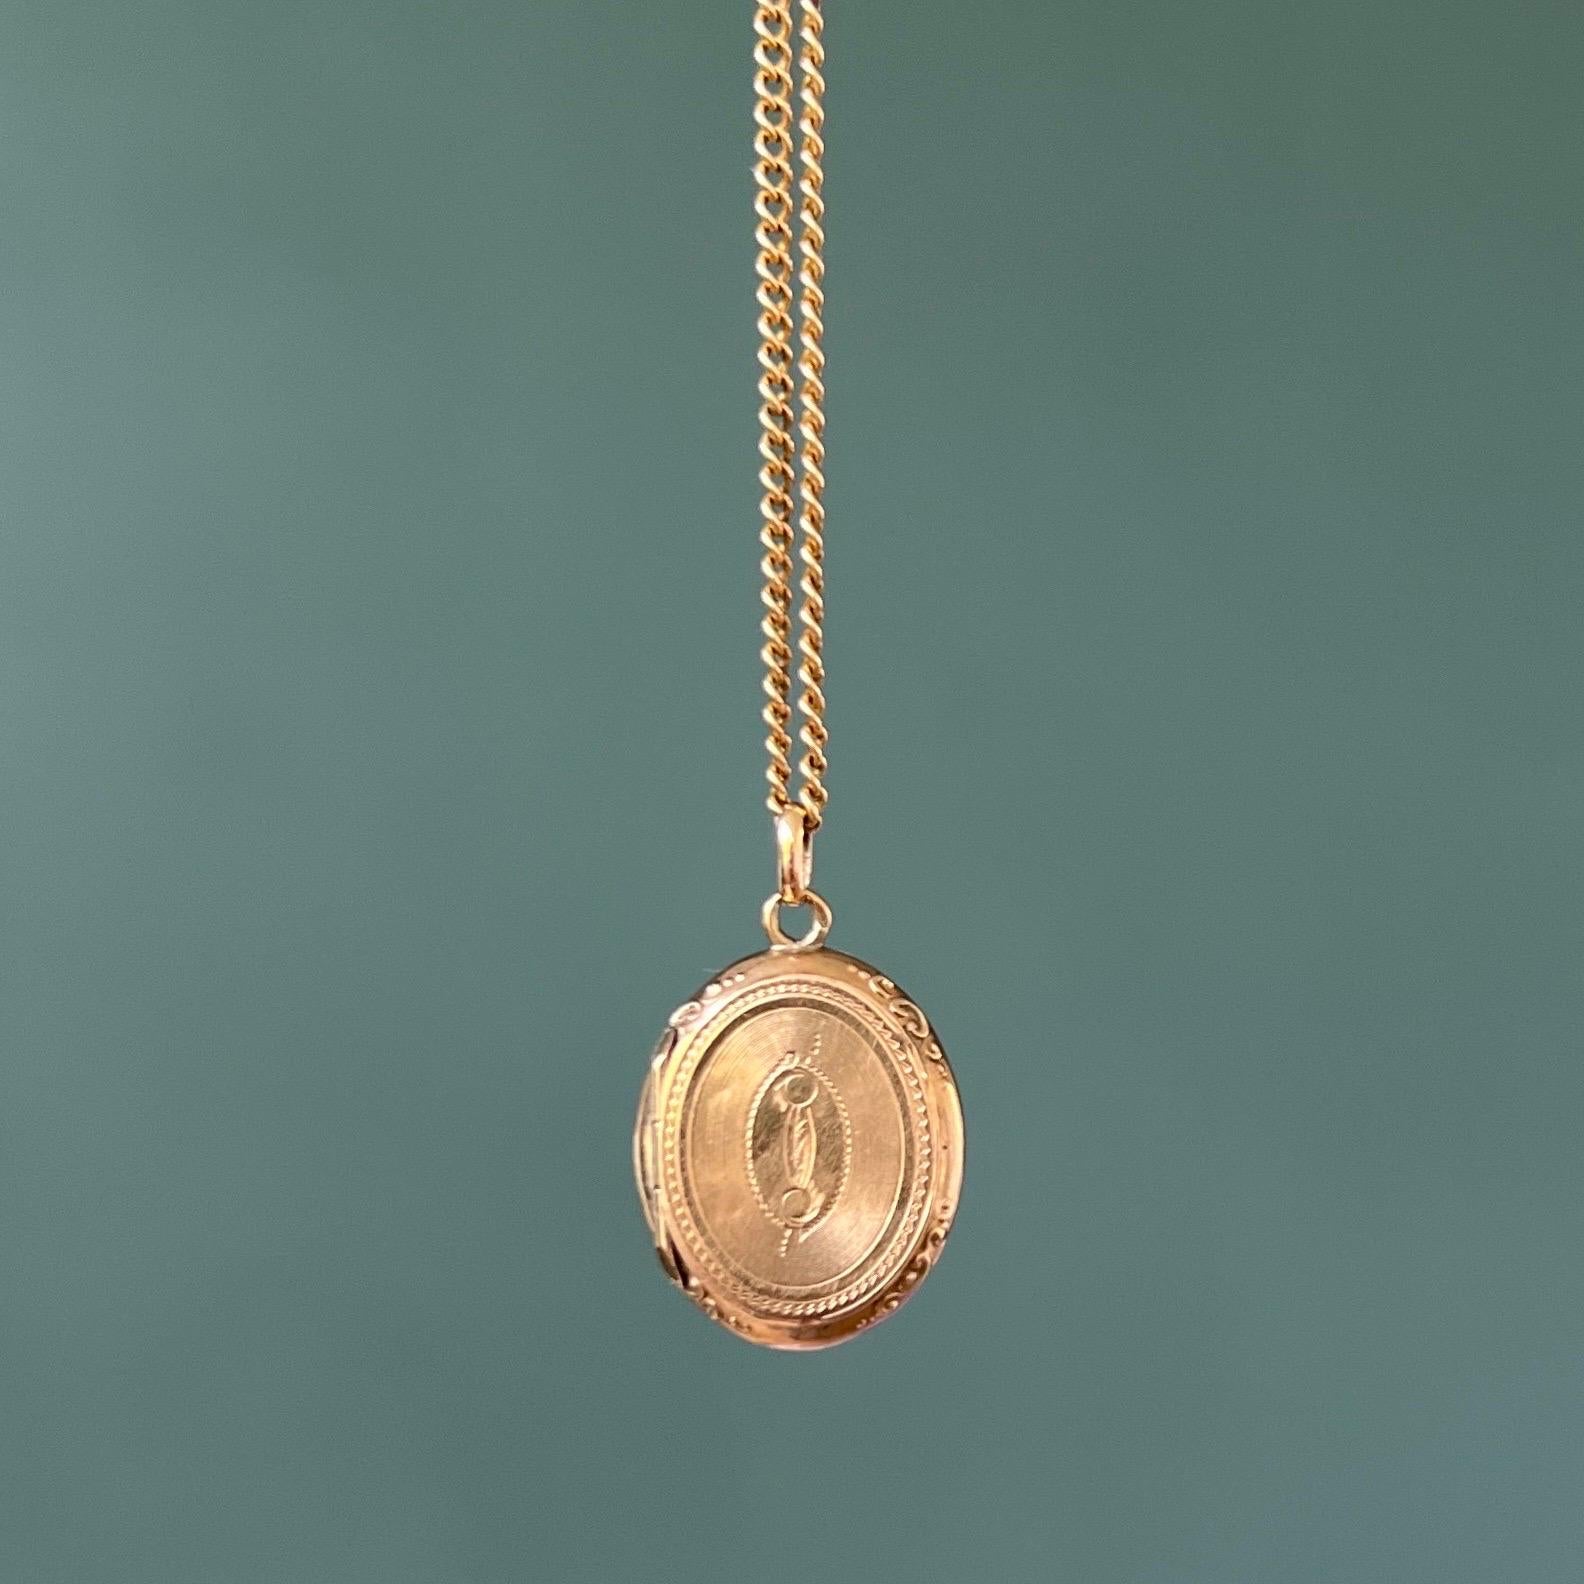 Ce médaillon de deuil victorien antique était autrefois porté près du cœur de quelqu'un. Le pendentif en forme de médaillon date du 19e siècle et est réalisé en or 14 carats. L'avant et l'arrière de ce pendentif de forme ovale sont joliment gravés